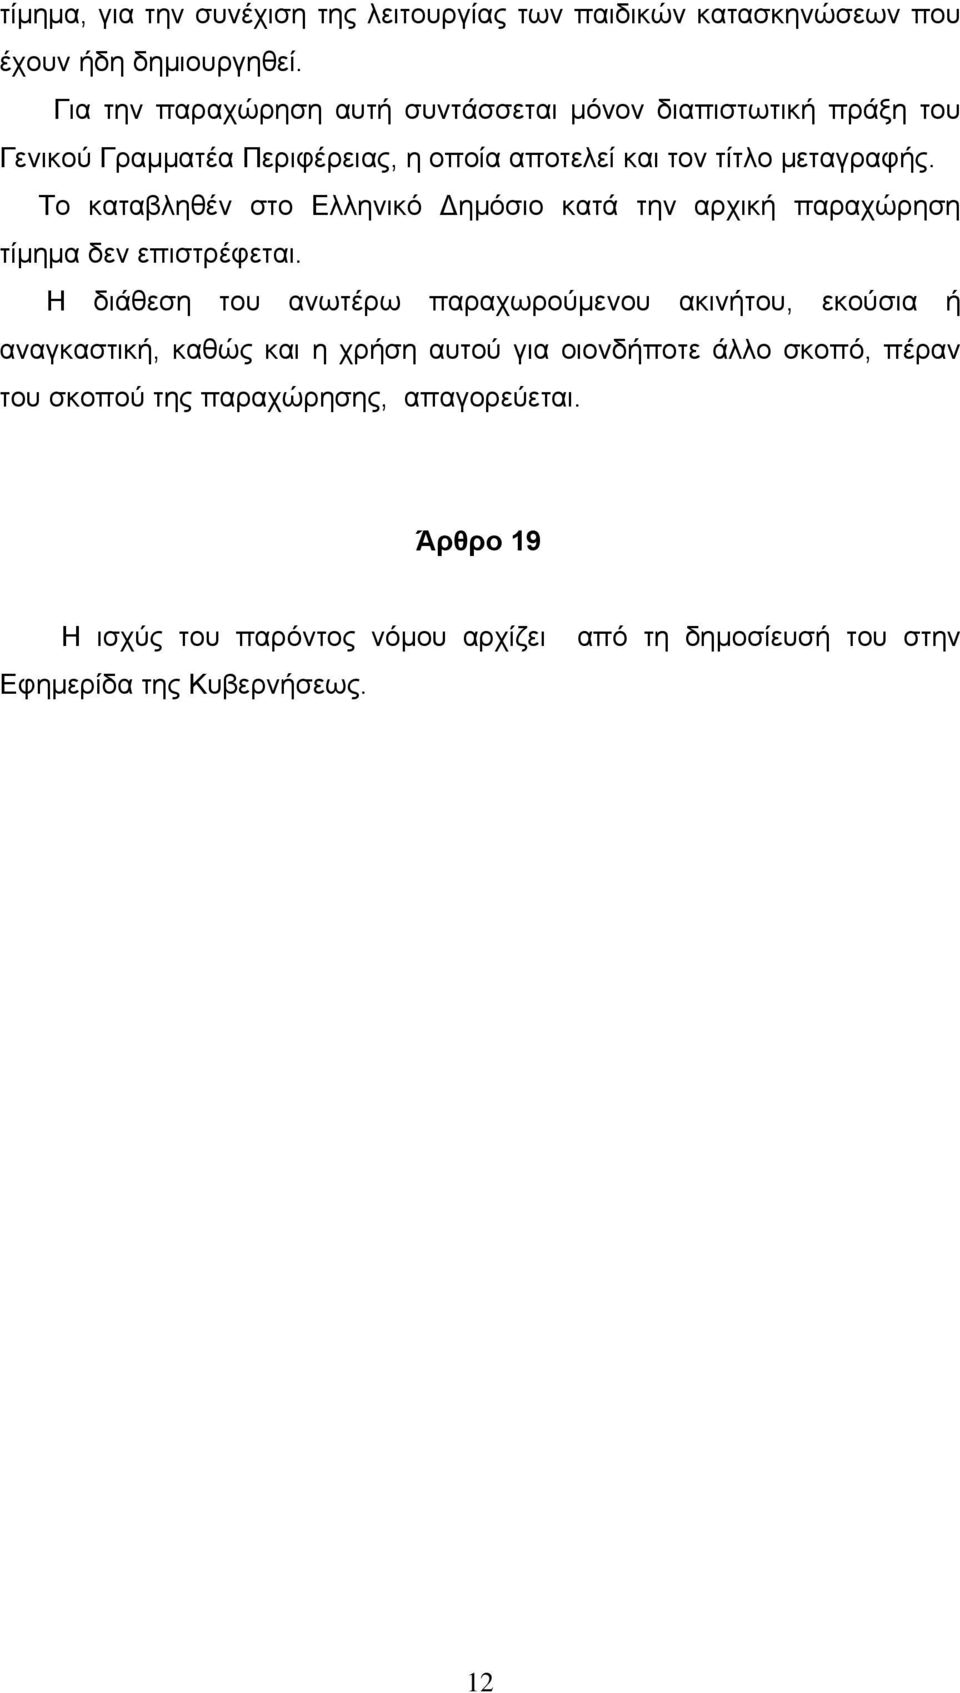 Το καταβληθέν στο Ελληνικό Δημόσιο κατά την αρχική παραχώρηση τίμημα δεν επιστρέφεται.